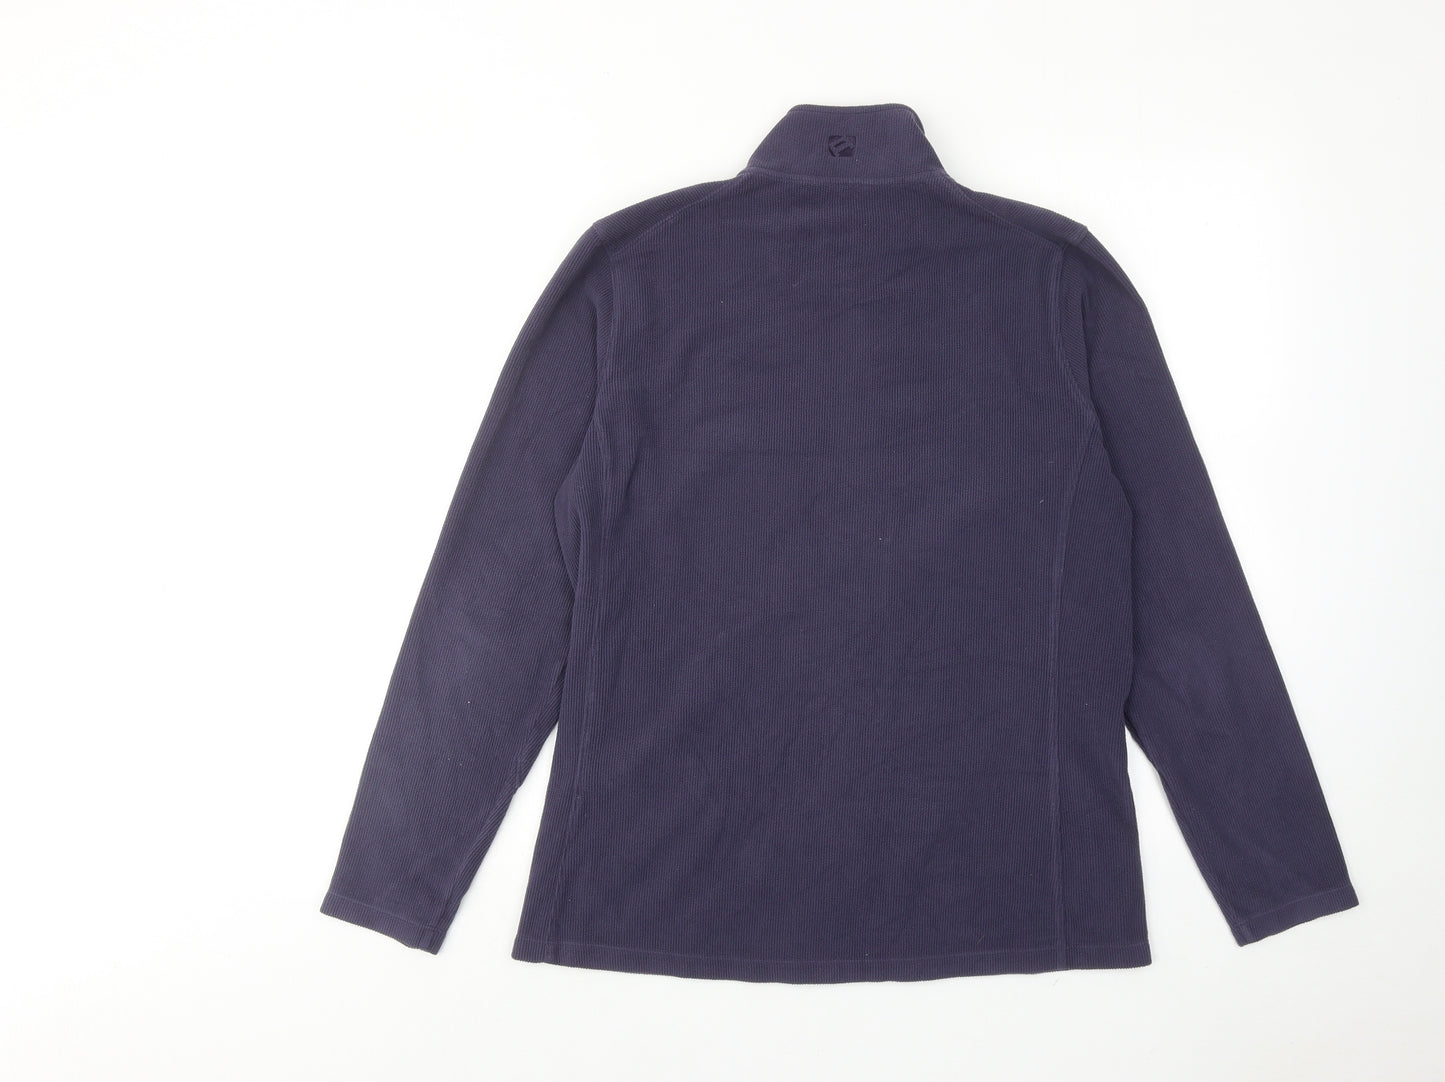 Rohan Womens Purple Jacket Size M Zip